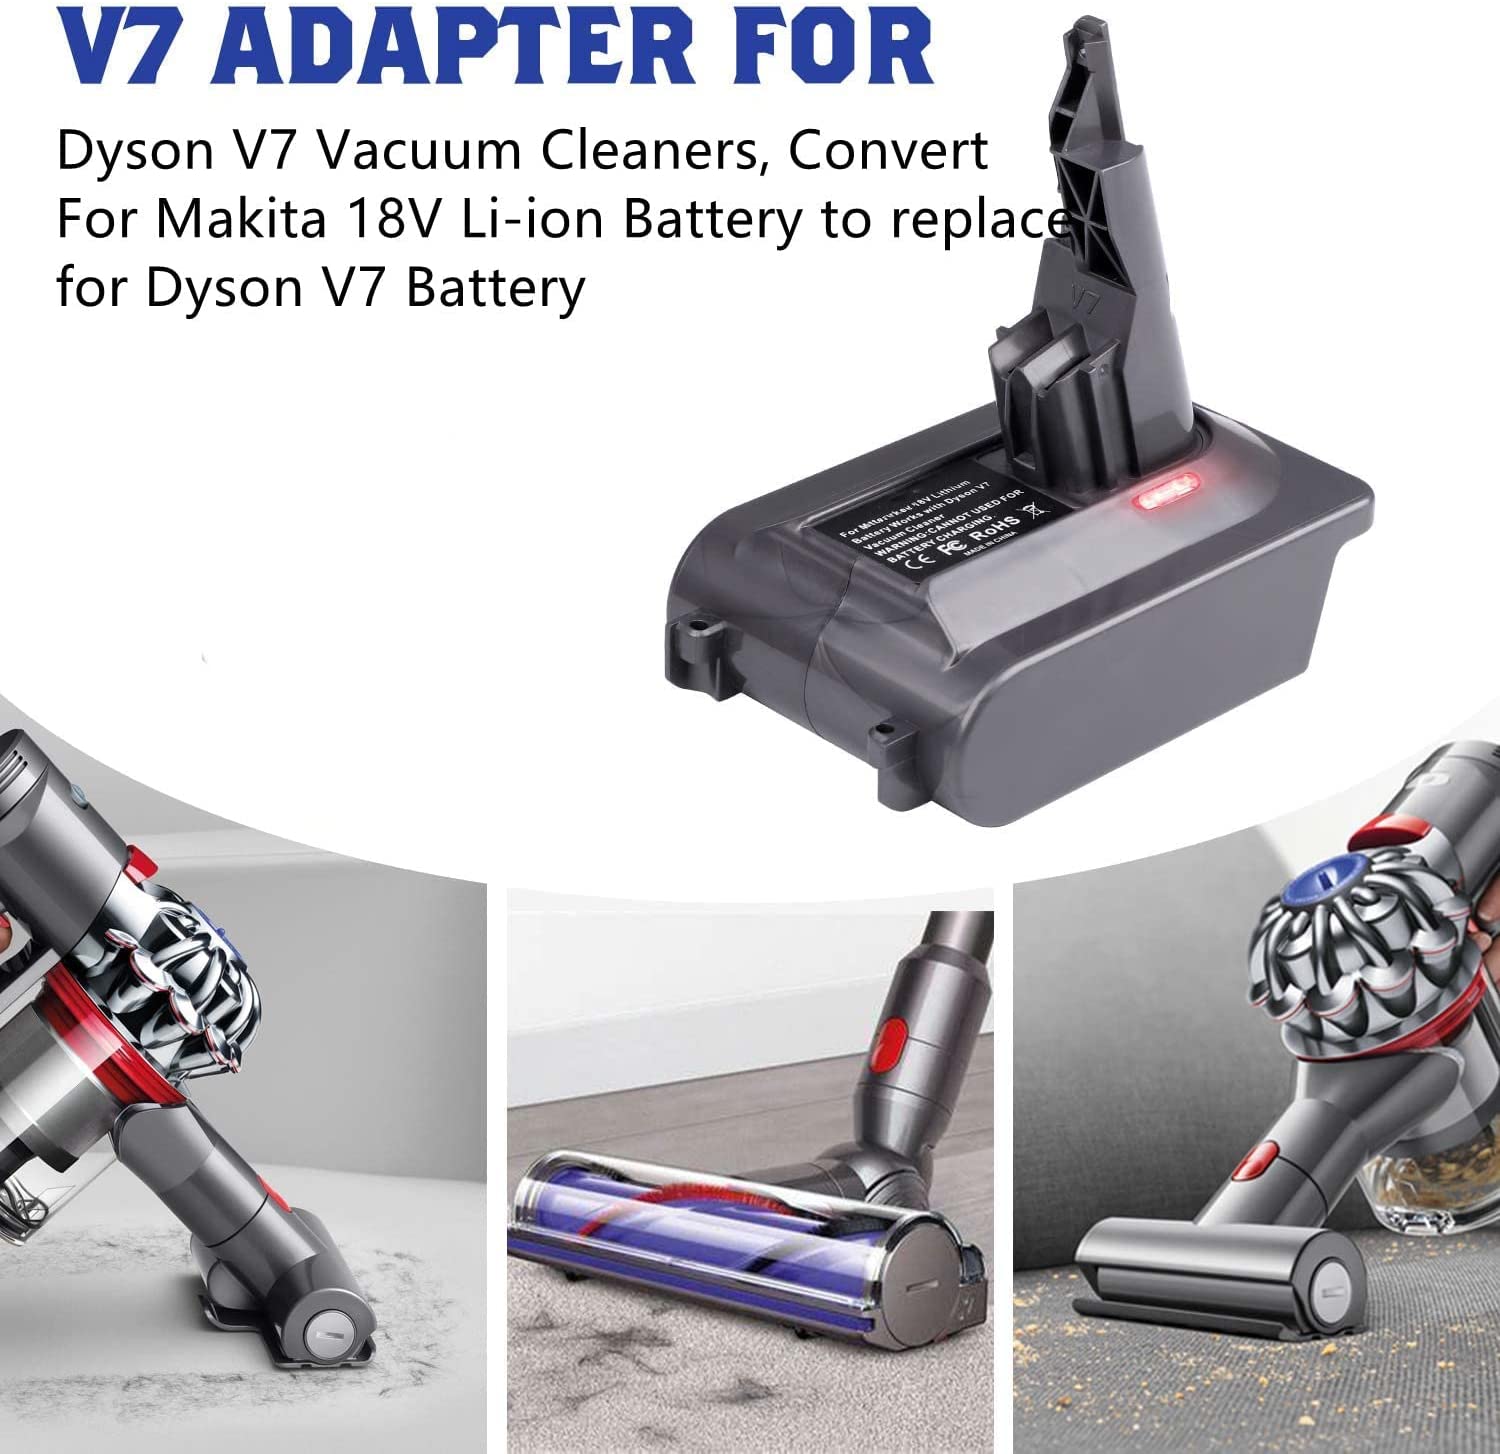 Makita 18V to Dyson V6 Battery Adapter